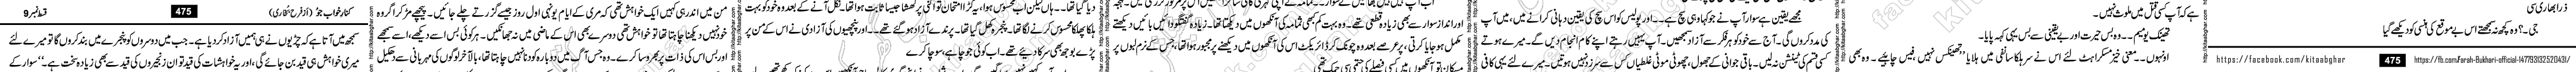 Kinar Khawab Jo Last Episode 11 Urdu Novel by Farah Bukhari